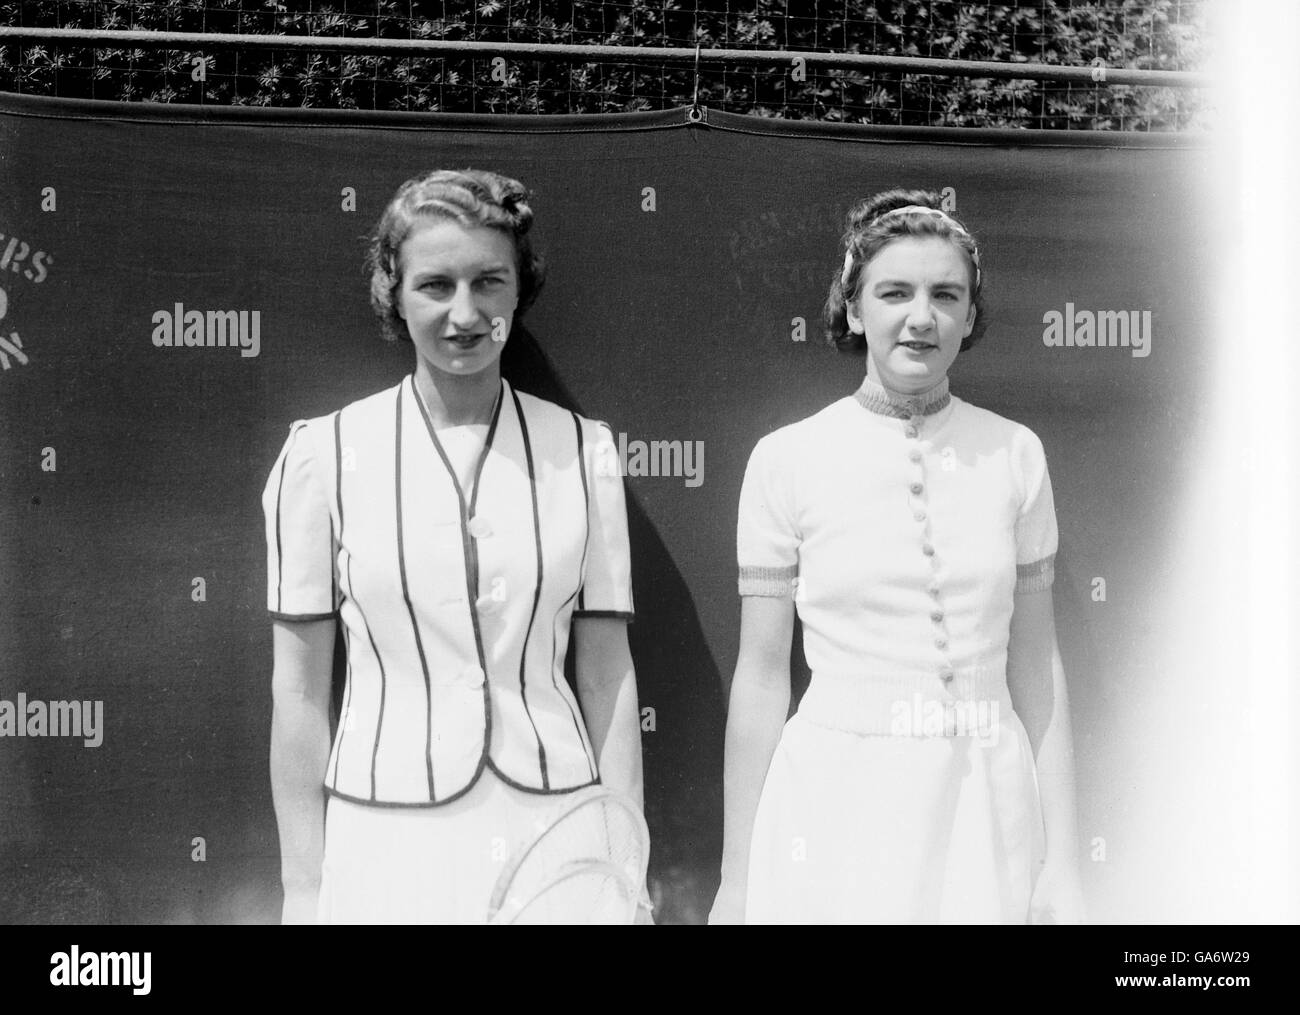 Tenis - Rosemary Thomas - Mary Hare (nee Hardwick). Mary Hare (nee Hardwick) (l) y Rosemary Thomas (r) Foto de stock